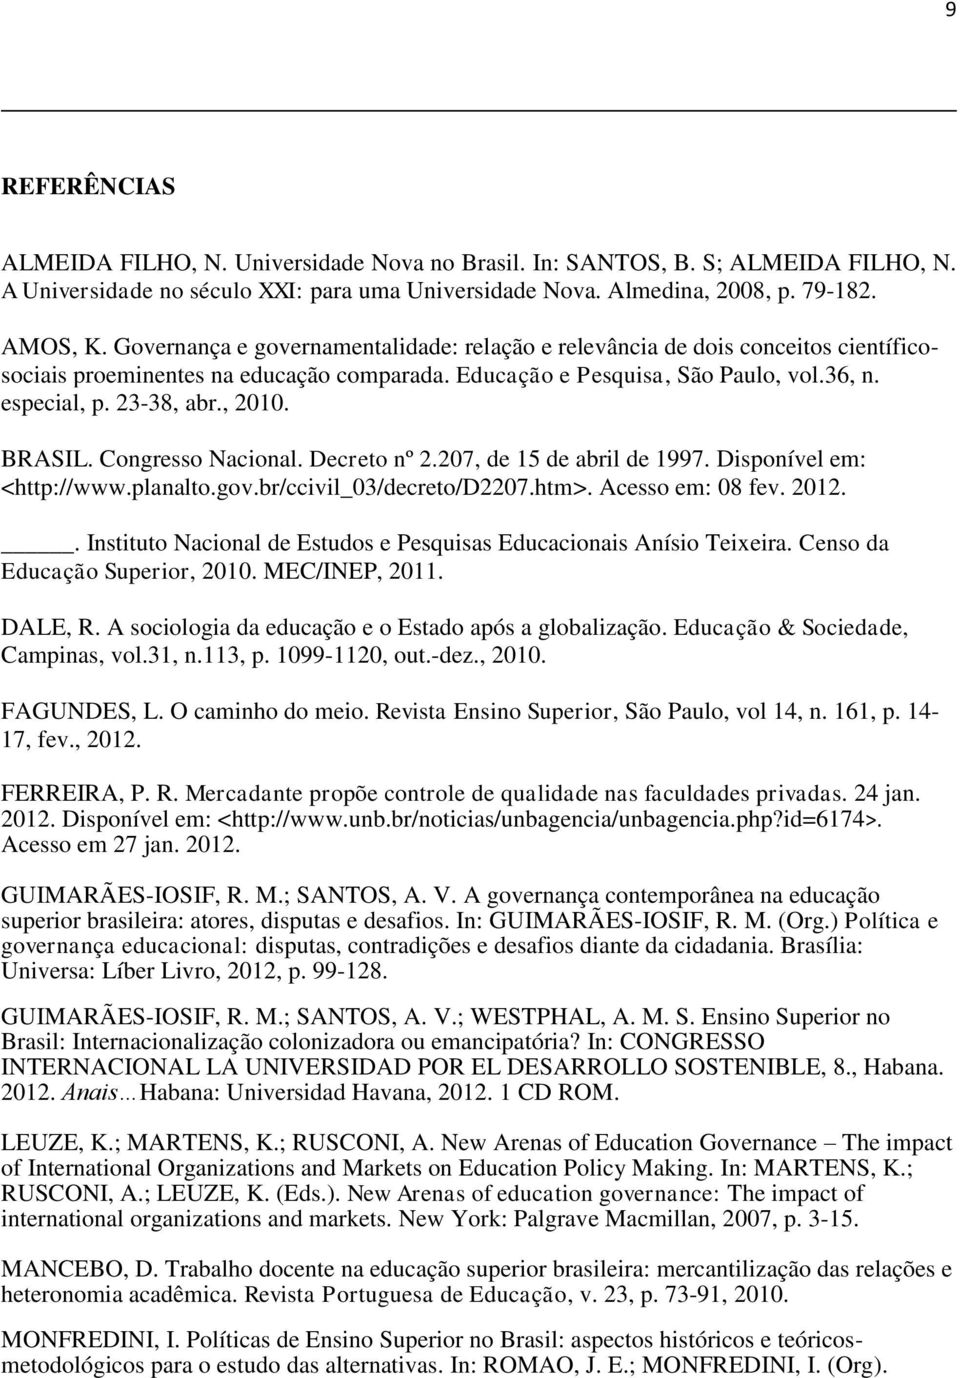 BRASIL. Congresso Nacional. Decreto nº 2.207, de 15 de abril de 1997. Disponível em: <http://www.planalto.gov.br/ccivil_03/decreto/d2207.htm>. Acesso em: 08 fev. 2012.